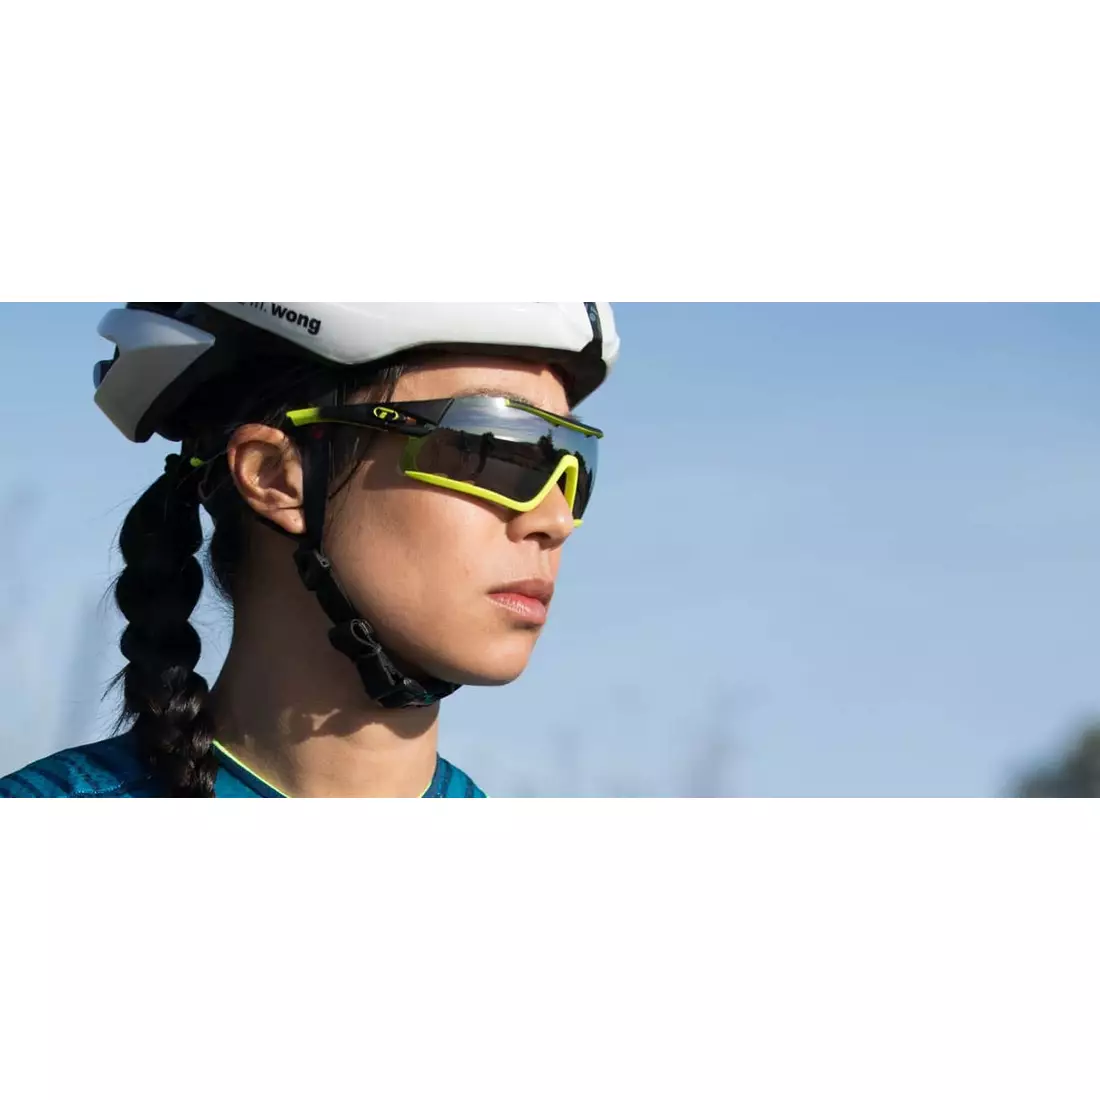 Sportbrille mit austauschbaren Linsen. TIFOSI DAVOS white black TFI-1460104801